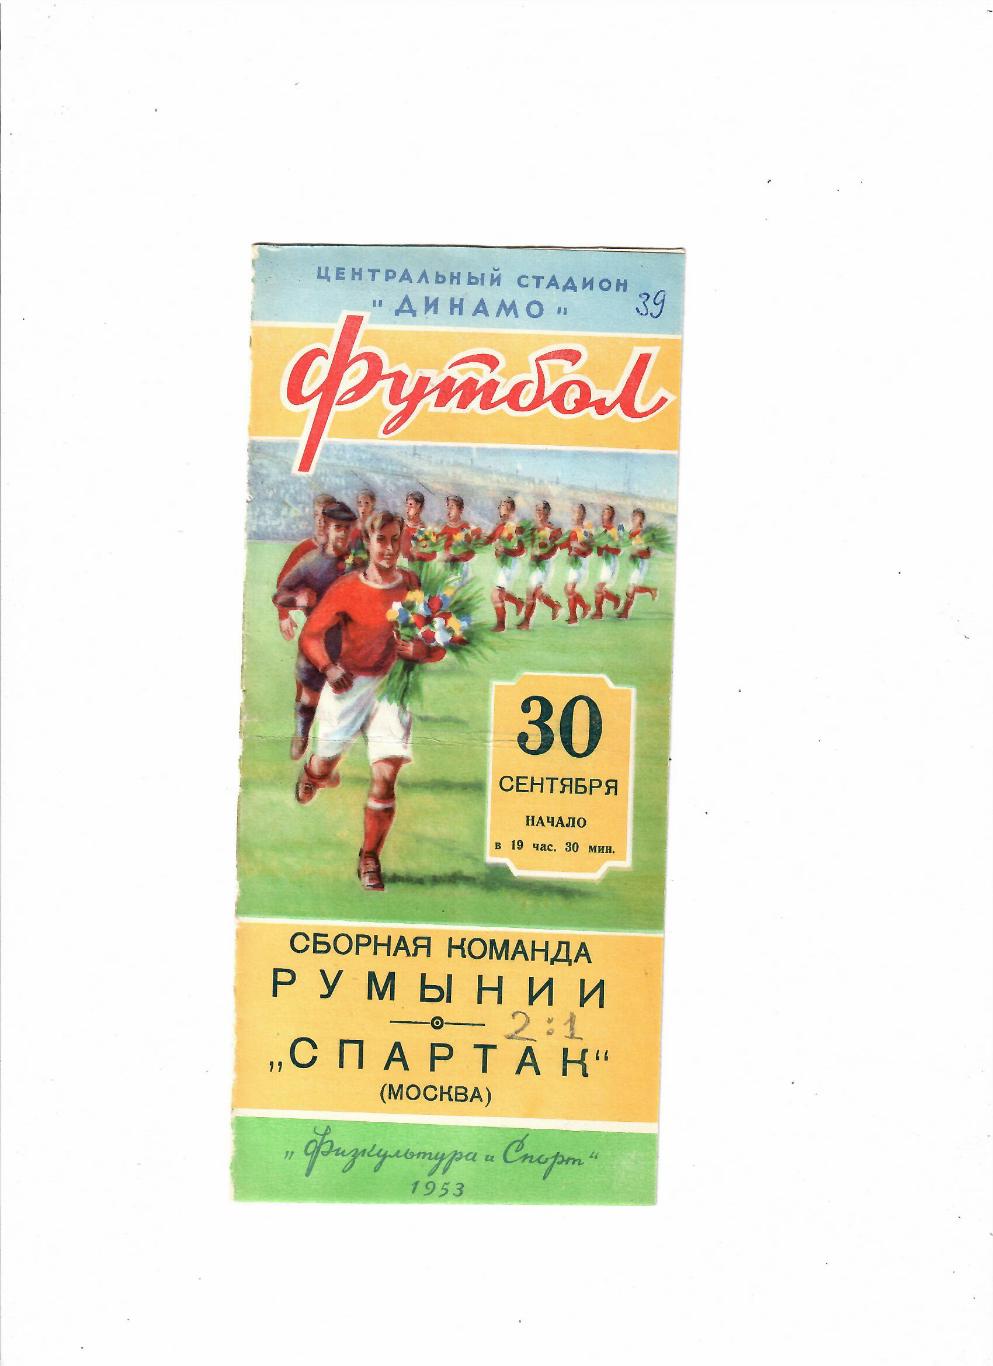 Спартак Москва-Сборная Румынии 1953